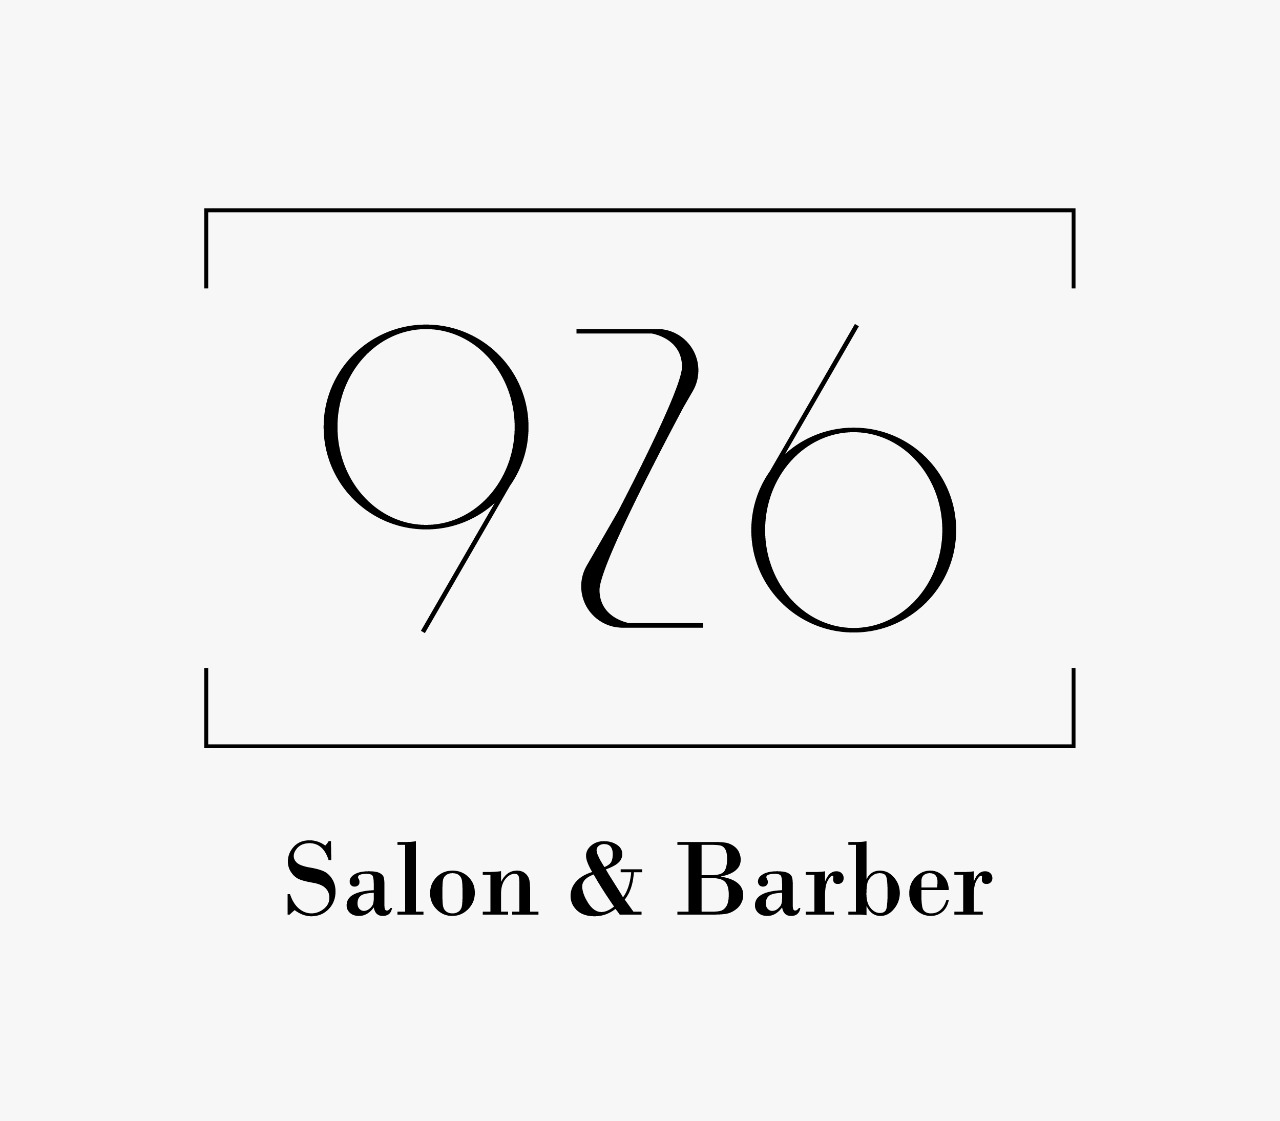 926 Salon & Barber